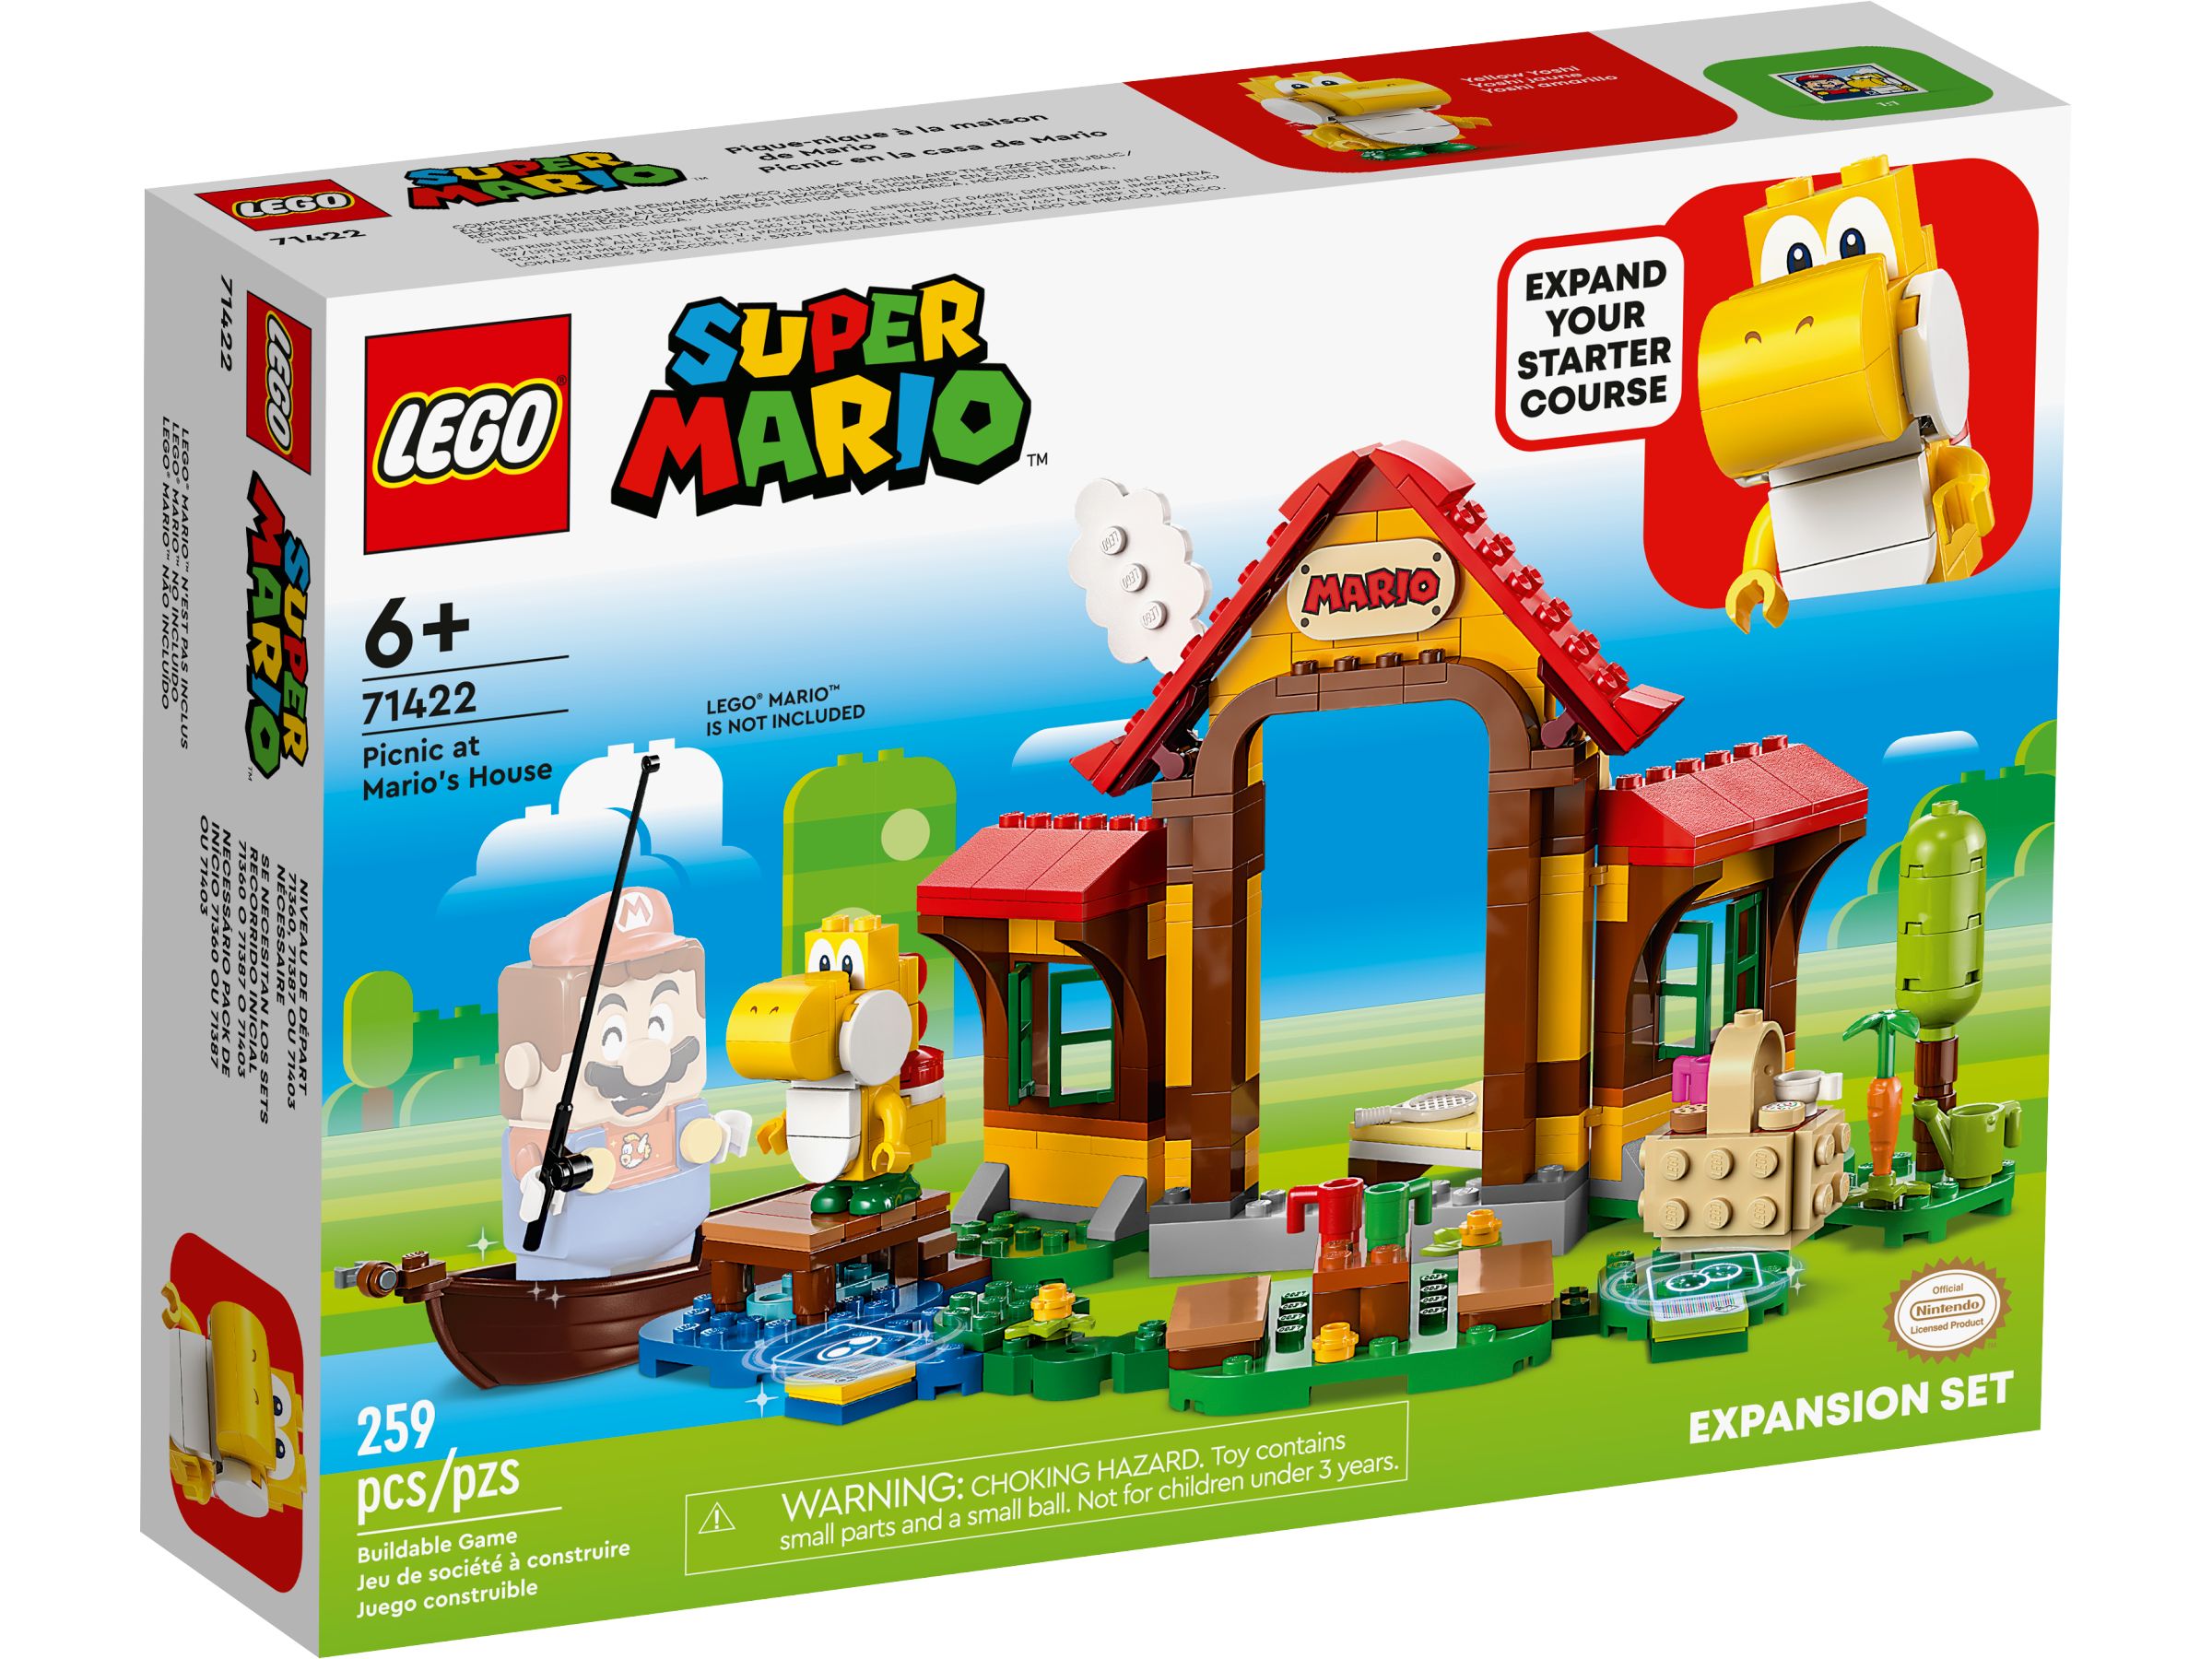 LEGO Super Mario 71422 Picknick bei Mario – Erweiterungsset LEGO_71422_Box1_v39.jpg